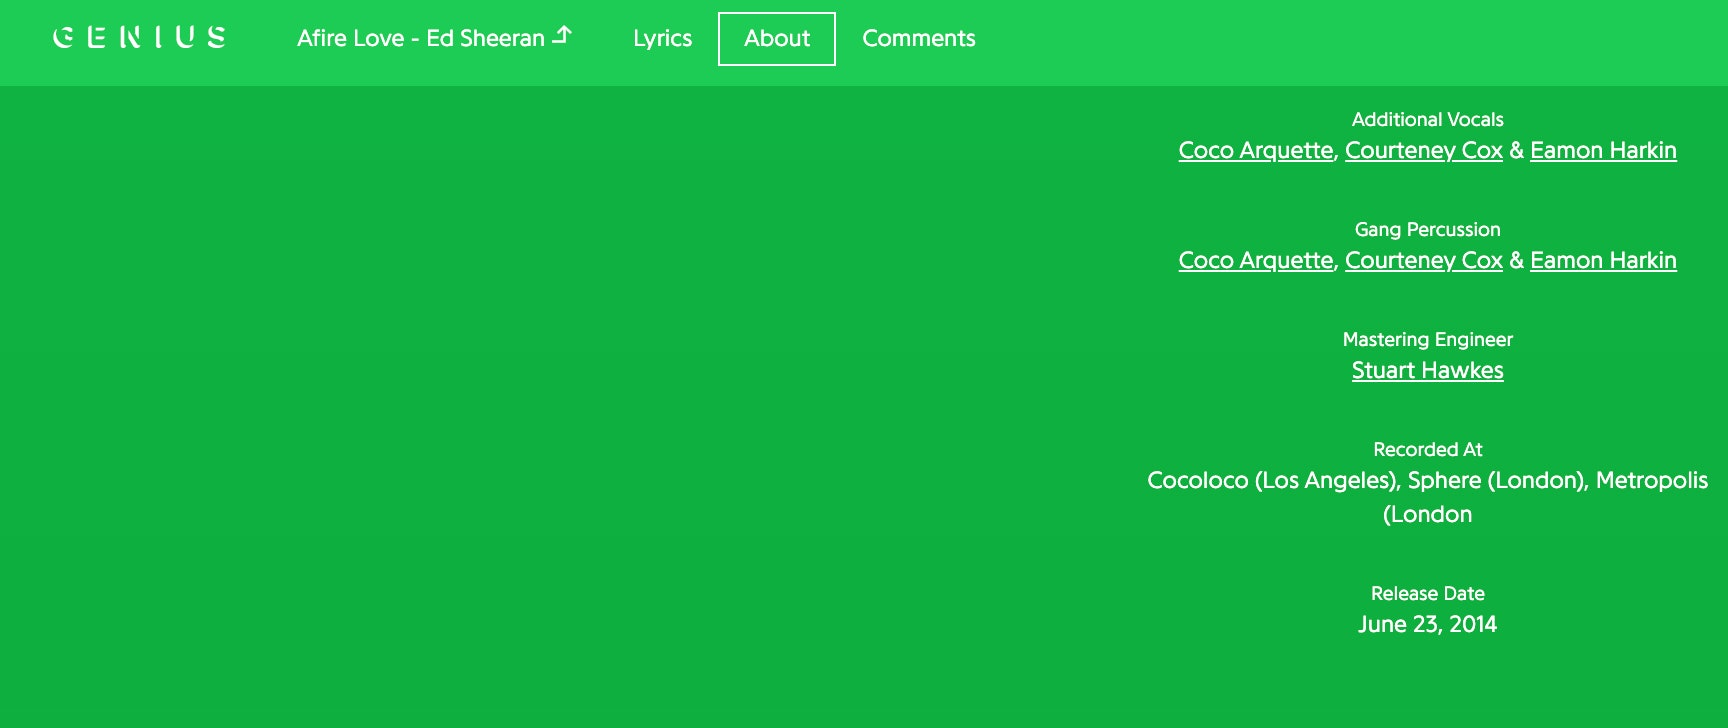 Courteney Cox è più di una semplice amica di Ed Sheeran: canta nei suoi album